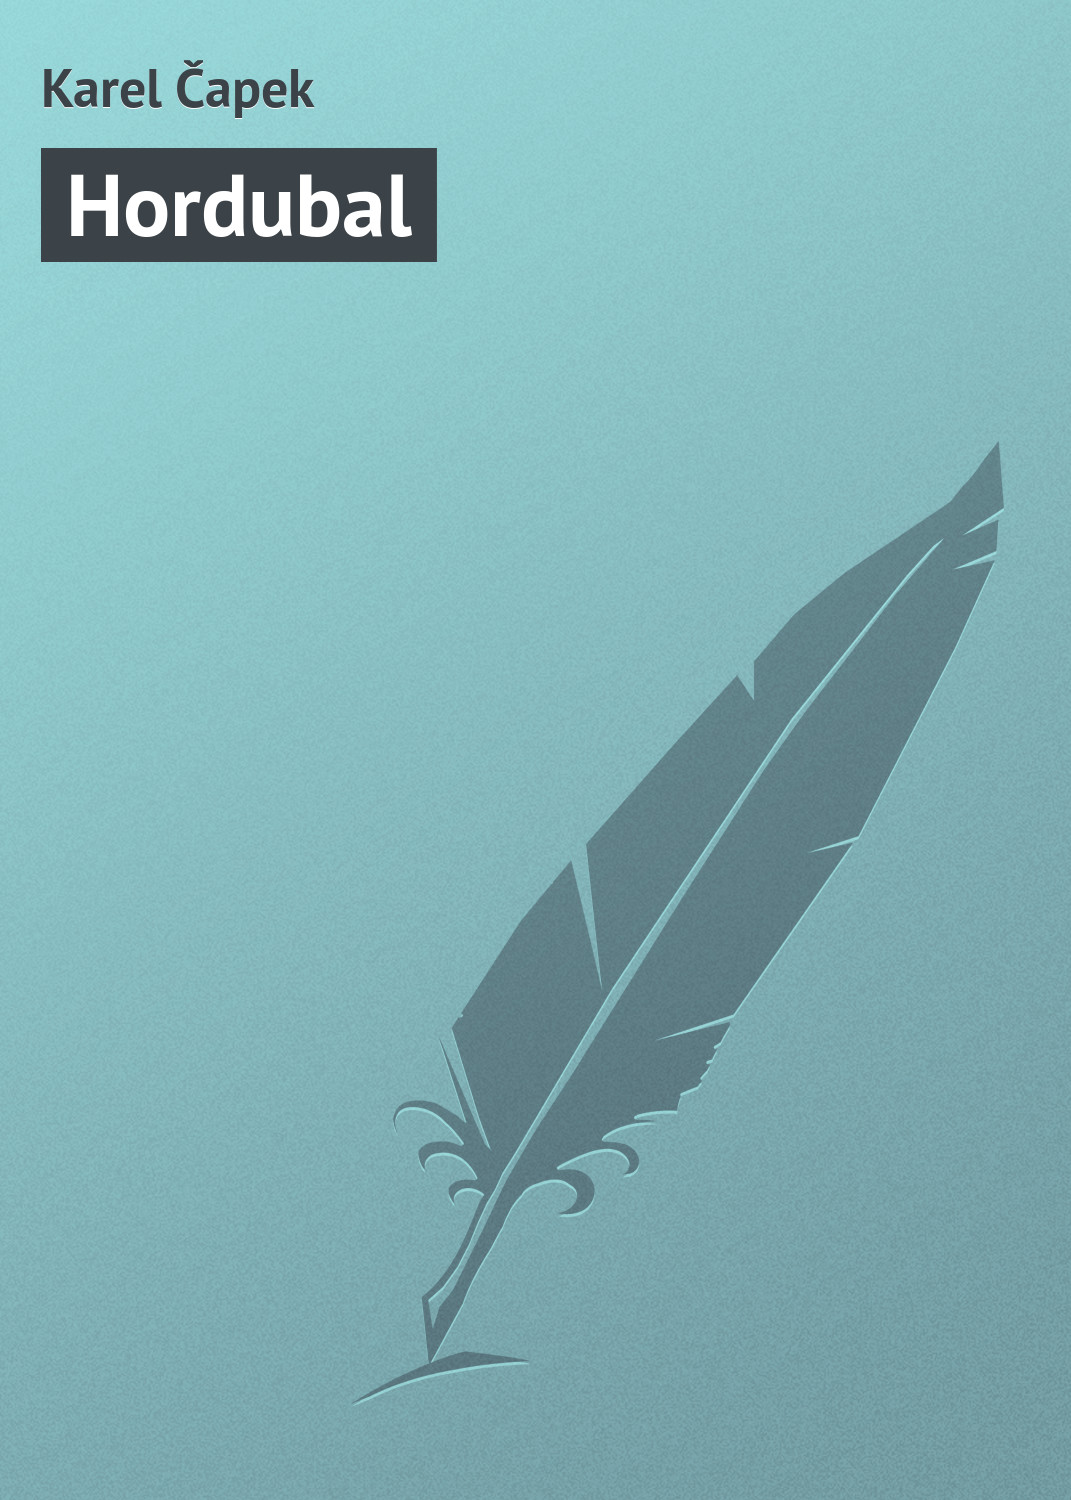 Книга Hordubal из серии , созданная Karel Čapek, может относится к жанру Зарубежная старинная литература, Зарубежная классика. Стоимость электронной книги Hordubal с идентификатором 20833830 составляет 5.99 руб.